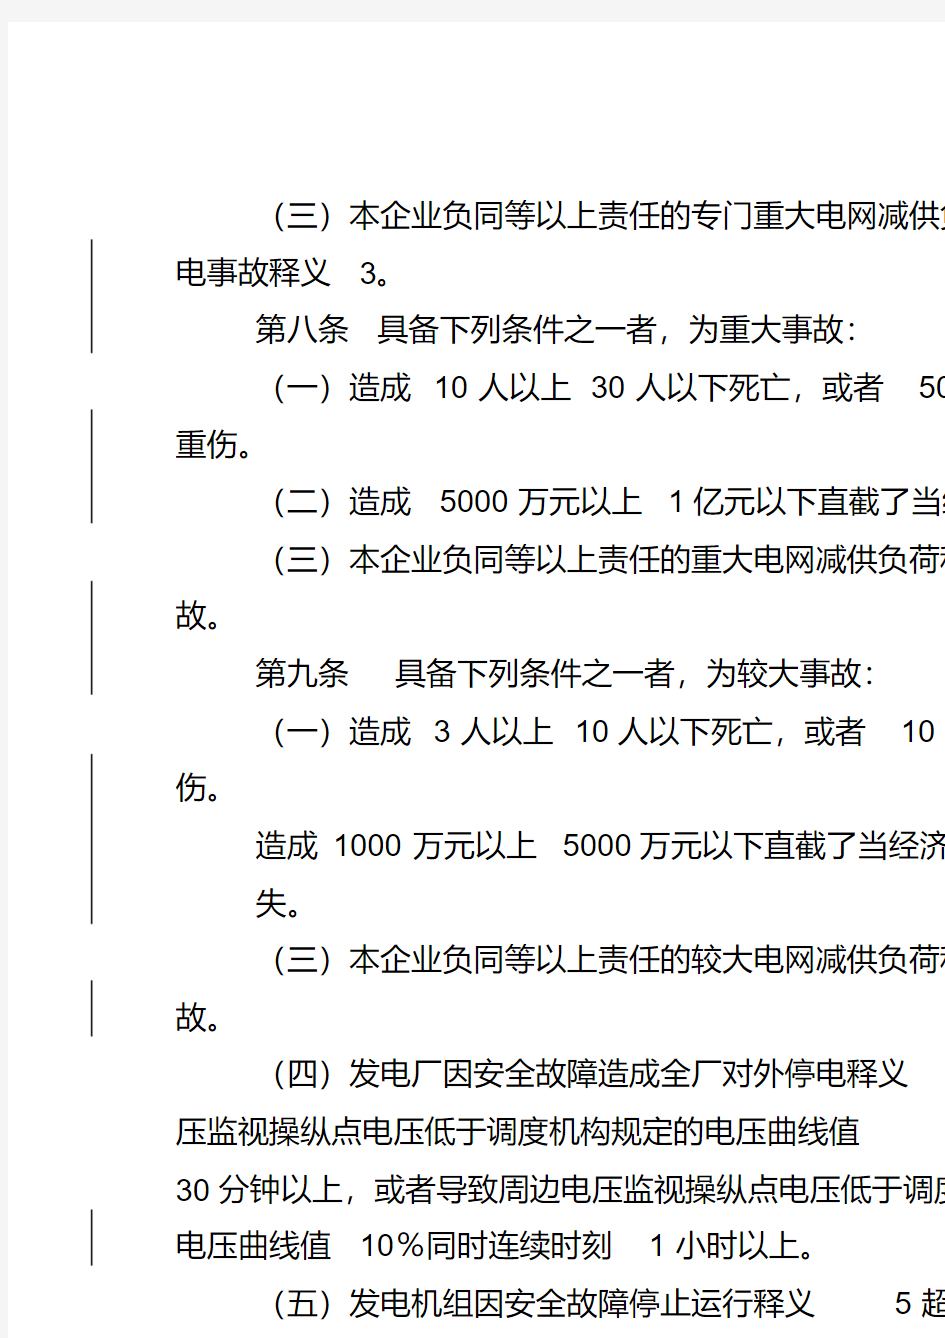 中国国电集团公司生产安全事故调查规程